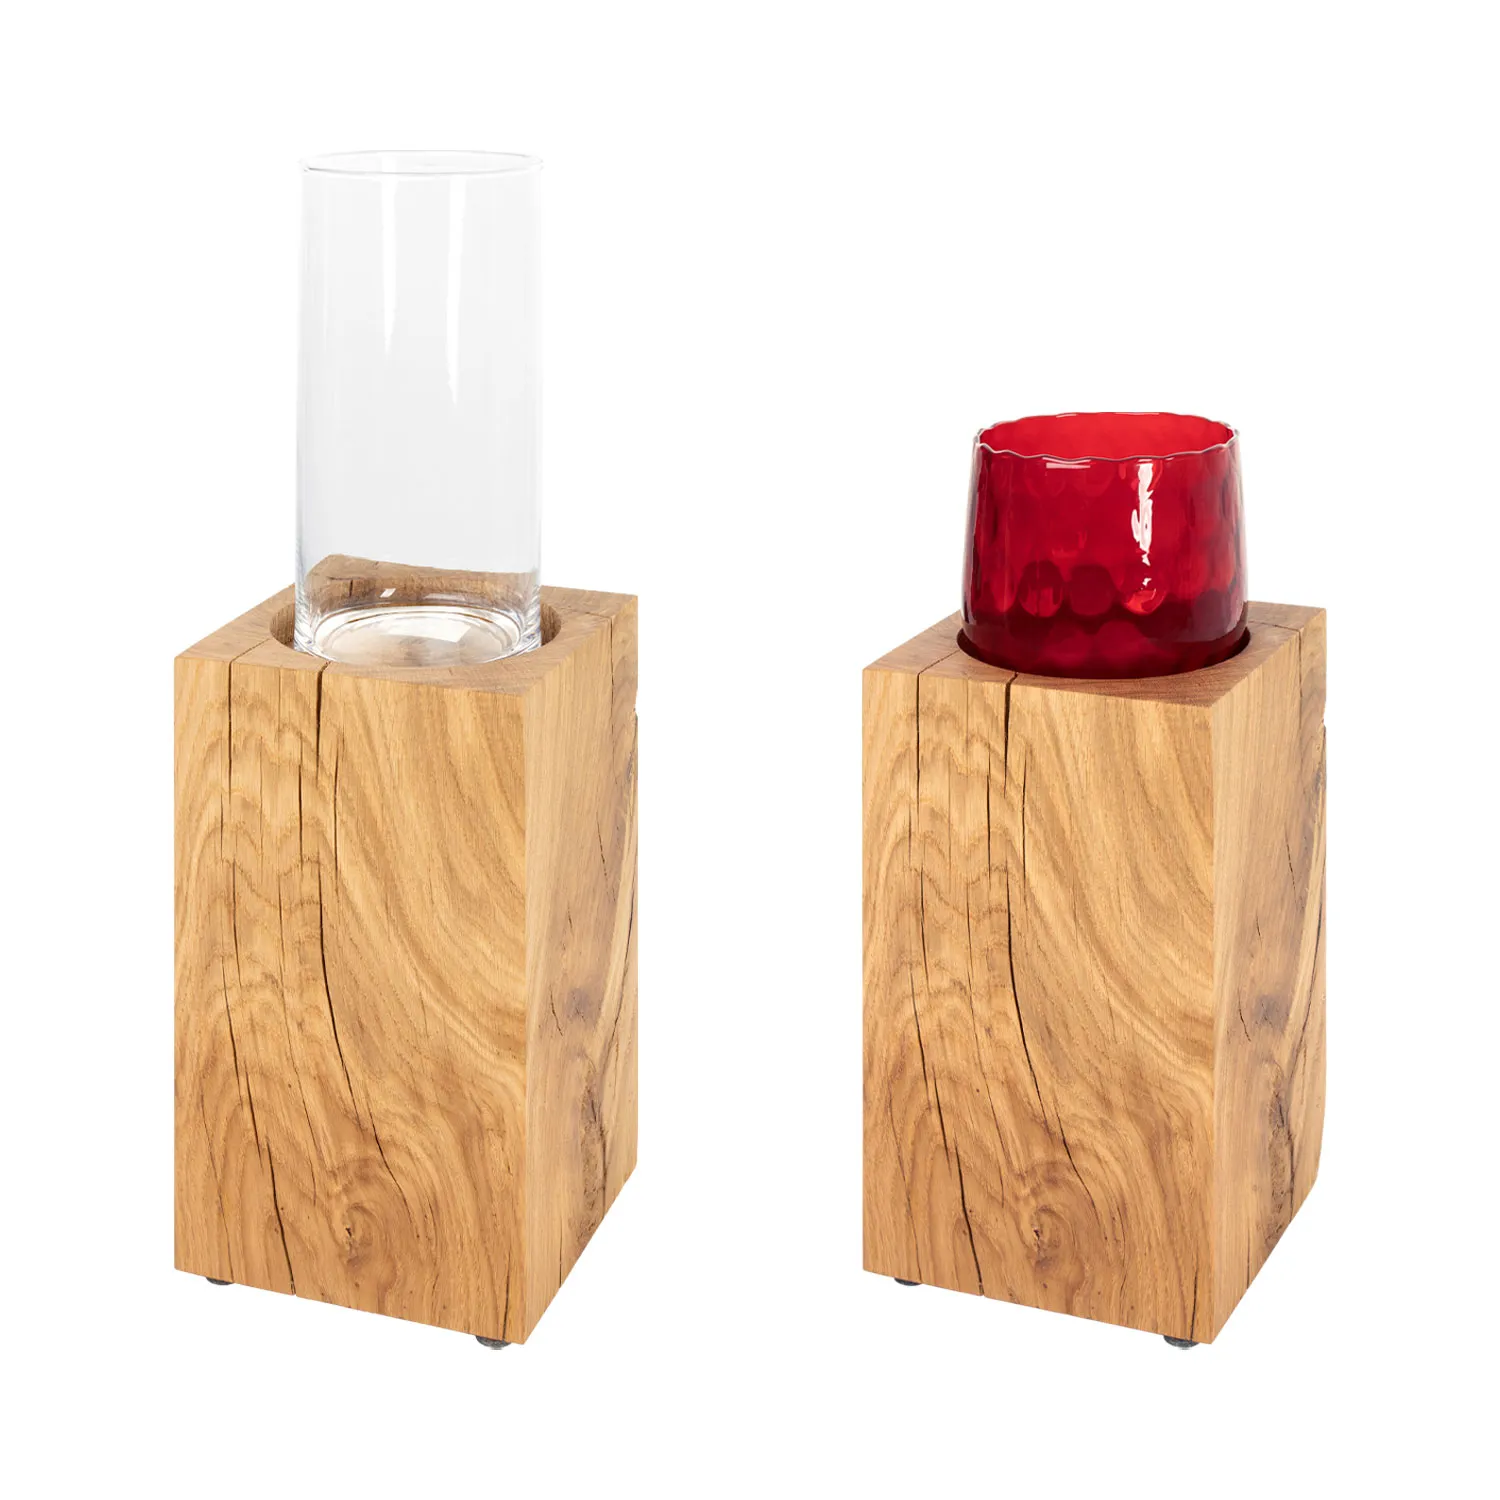 Deko Windlichtsäule mit Glas in zwei Varianten: rot und transparent